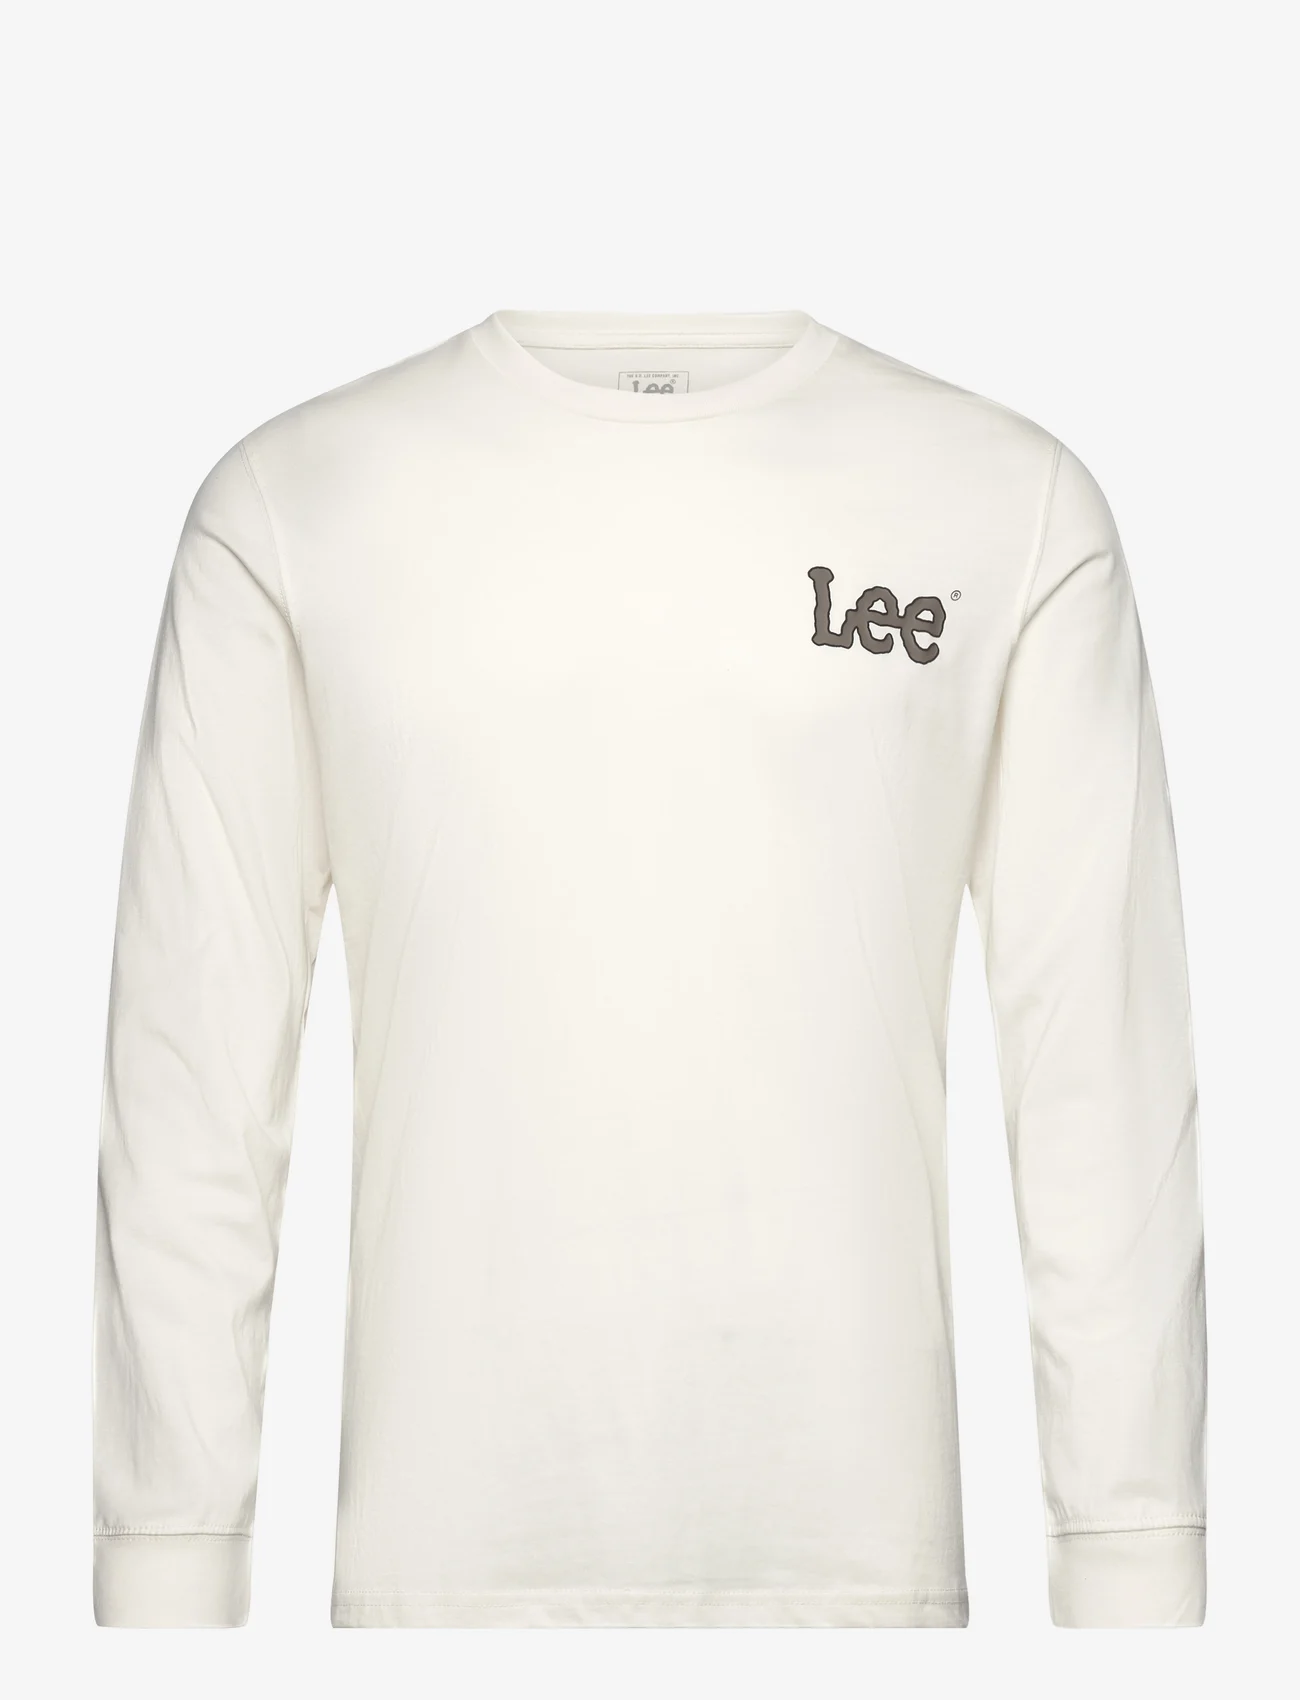 Lee Jeans - ESSENTIAL LS TEE - lowest prices - ecru - 0